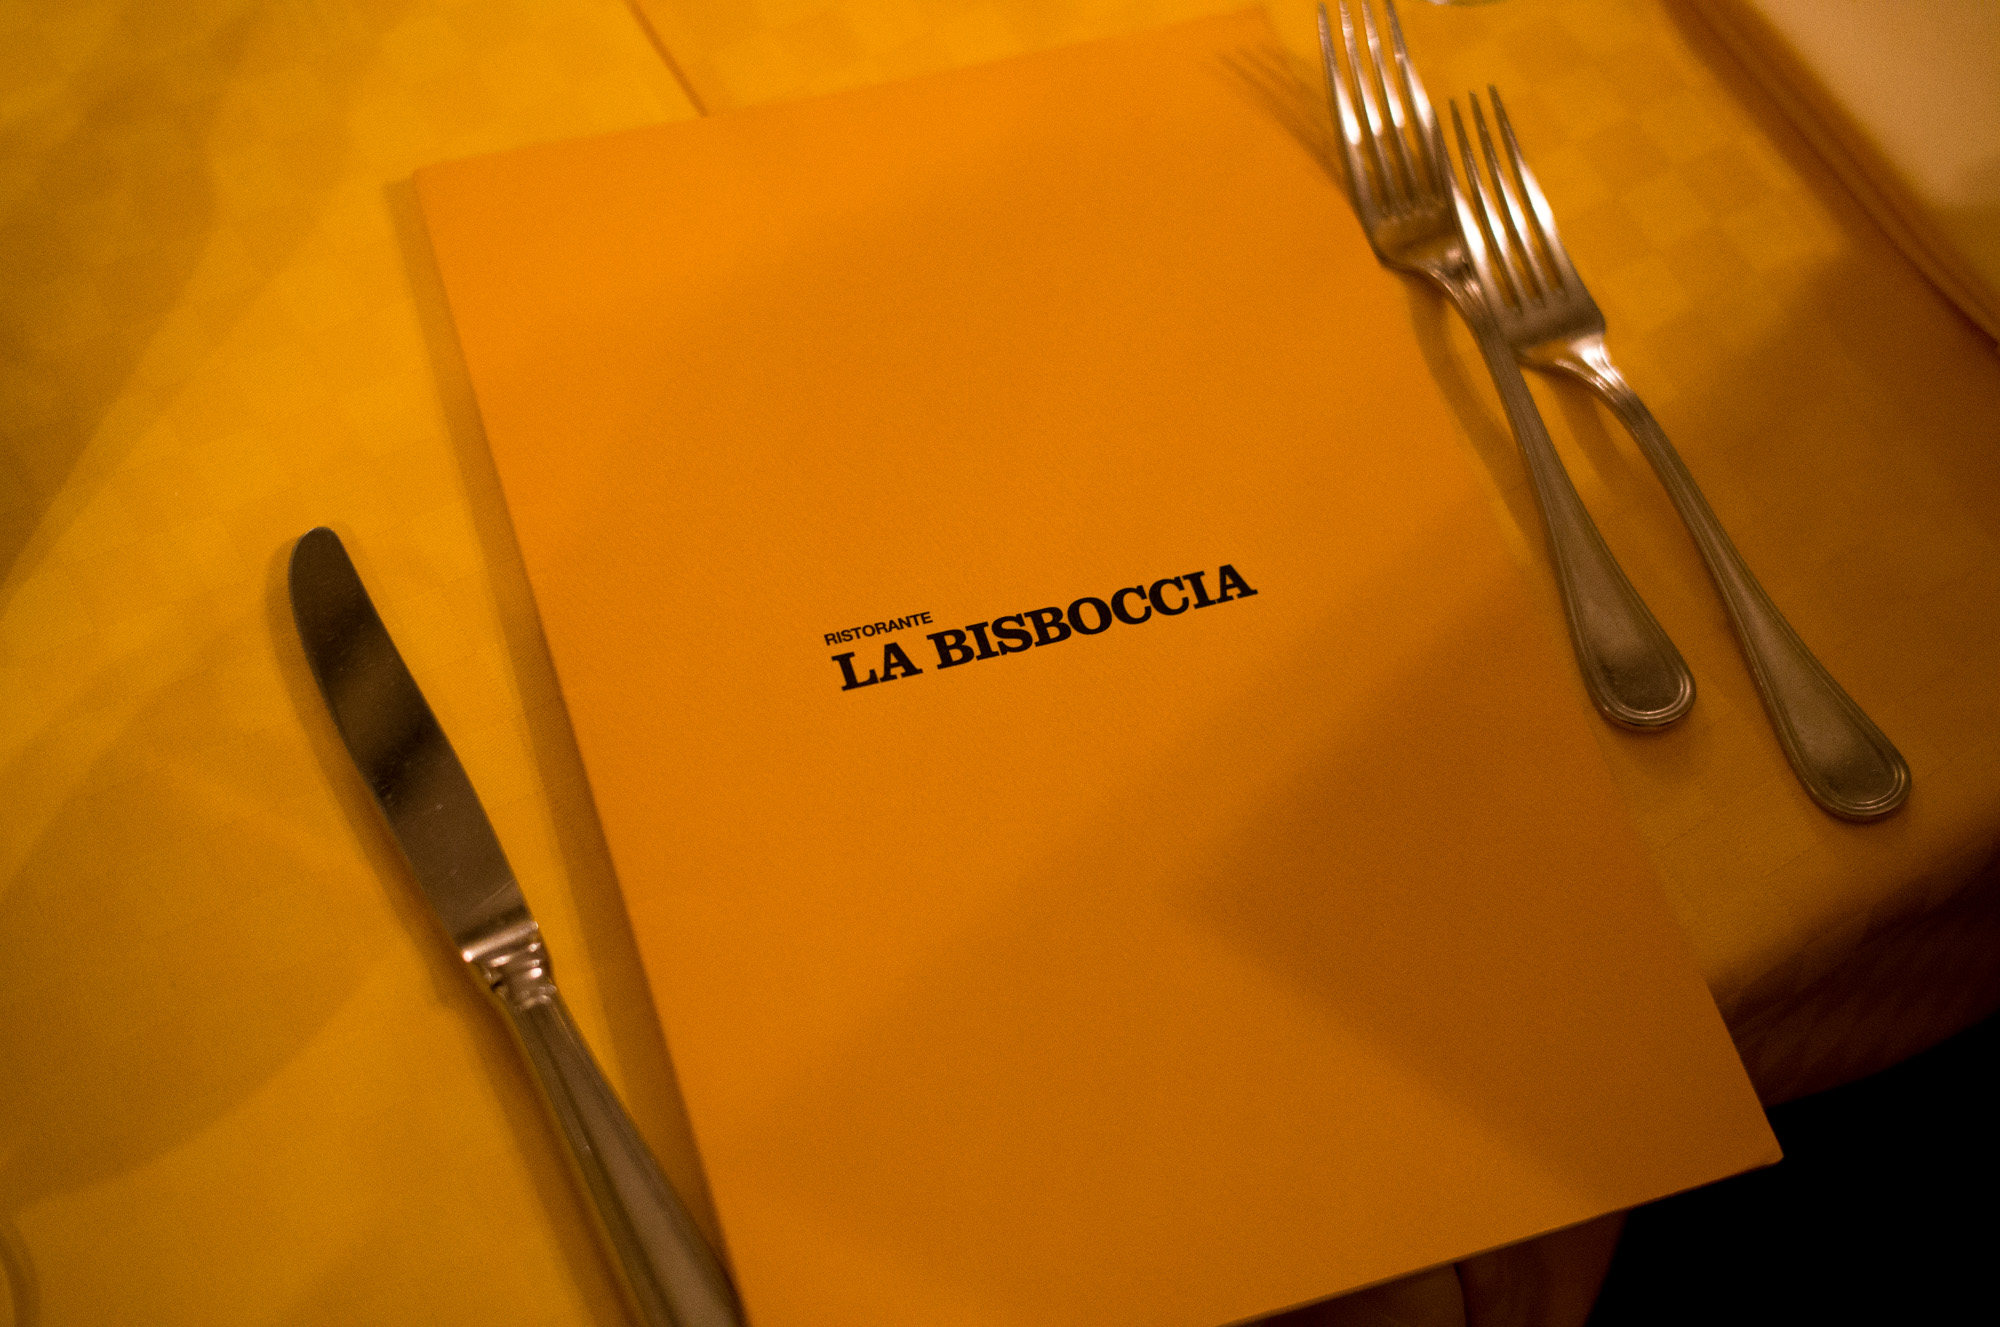 LA BISBOCCIA　ラ・ビスボッチャ/LA BISBOCCIA (広尾/イタリアン) RISTORANTE LA BISBOCCIA 〒150-0013 東京都渋谷区恵比寿2-36-13 広尾MTRビル1F "イタリア政府公認レストラン"として選ばれた本格的イタリアン。スタッフもイタリア人が中心で、イタリアにいる気分になれそうな空間。 https://labisboccia.tokyo/ THE RITZ-CARLTON TOKYO  // 2022.4.27-4.28  ザ・ロビーラウンジ ラウンジ ホテルの45階、お客様をお迎えするメインロビーに位置する「ザ・ロビーラウンジ」は、お待ち合わせや語らいの時間を特別なものにします。45階の開放的な空間で楽しむ伝統的なアフタヌーンティー ザ・リッツ・カールトン東京の45階、お客様をお迎えするメインロビーに位置する「ザ・ロビーラウンジ」は、お待ち合わせや語らいの時間を特別なものにします。 心地よいピアノの生演奏が流れるラグジュアリーな空間で、モダンなアフタヌーンティーセットや厳選された世界各地の茶葉によるティーセレクションと共に、優雅なひと時をお楽しみ下さい。東京の中心に位置する六本木というロケーションに相応しい、西洋と東洋のモダンな融合を表現したインテリアには、オリエンタルな紫、赤、モノトーンを基調とした配色や、和をモチーフとしたファブリックなどを用い、全体として和洋の調和を感じさせる空間となっており、時間の移ろいに合わせた生演奏が彩りを添えます。ISAIA Napoli TOKYO MIDTOWN イザイア ナポリ 東京ミッドタウン スーツ、ジャケット、シャツ、パンツ、シューズ、ネクタイ、チーフ、カバン 愛知 名古屋 Alto e Diritto altoediritto アルトエデリット 20224月19日 ミシュラン ヴァガボンド 2021年12月14日 LA VAGABONDE ラ・ヴァガボンド フレンチ フランス料理 鶴舞 ラヴァカボンド chef ryousuke iwamoto 岩本龍介 予約のとれないフレンチ 名店 美食家 放浪者 旅人 愛知県名古屋市中区千代田2丁目14-24 キャノンピア鶴舞 1F 愛知 名古屋 Alto e Diritto altoediritto アルトエデリット 超絶フレンチ ドレスコード ディナー 中華風家庭料理 ふーみん (表参道/中華料理)　〒107-0062 東京都港区南青山５丁目７−１７ 03-3498-4466　表参道・青山エリアの南青山の中華料理店、中華風家庭料理 ふーみんのオフィシャルページです　CHACOあまみや　千駄ヶ谷の有名なステーキ屋「CHACOあめみや」 炭焼きステーキ 〒151-0051 東京都渋谷区千駄ケ谷１丁目７−１２ 03-3402-6066 http://chacoamemiya.com/sp/ １９７９年（昭和５４年）に開店してから当時のままの姿の店内は重みを感じる。　（お客様からは「昭和の香りがする・・」と言われます）真っ白だった壁も年月を感じさせる趣がある。店内に入るとまず目に入るのが、大きな炭焼きの竈。営業当時からの肉の旨みを沢山吸い込んでいるかも・・・。１９７９年（昭和５４年）に開店してから当時のままの姿の店内は重みを感じる。　（お客様からは「昭和の香りがする・・」と言われます）真っ白だった壁も年月を感じさせる趣がある。店内に入るとまず目に入るのが、大きな炭焼きの竈。営業当時からの肉の旨みを沢山吸い込んでいるかも・・・。炭で焼かれたステーキのお皿は鉄板ではなく鋳物です。牛肉は融点が高いため冷めやすい鉄板ではすぐに肉が固くなってしまいます。チャコのお皿は長い時間温かいので柔らかい牛肉をゆっくりご賞味いただけます。ワイン片手に語らいながら心安らぐ美味しい時間をお過ごしください。LA BISBOCCIA　ラ・ビスボッチャ/LA BISBOCCIA (広尾/イタリアン) RISTORANTE LA BISBOCCIA 〒150-0013 東京都渋谷区恵比寿2-36-13 広尾MTRビル1F "イタリア政府公認レストラン"として選ばれた本格的イタリアン。スタッフもイタリア人が中心で、イタリアにいる気分になれそうな空間。 https://labisboccia.tokyo/ 愛知 名古屋 Vineria Cassini ヴィネリア カッシーニ 東別院 イタリアン 愛知県名古屋市中区伊勢山1-9-13 伊勢山ハイツ1F #1F Iseyamahaitsu, 1-9-13 Iseyama Naka-ku, Nagoya-shi, Aichi-ken 460-0026, Japan イタリアを旅するような気分で楽しむ郷土料理と様々なワイン "Vineria(ヴィネリア)とは、イタリア語でVino(ワイン)＋Osteria(食堂)を足した造語です。 イタリアの郷土料理とその土地で造られた様々なワインをイタリアを旅するような気分でお楽しみいただけます。 「イタリア現地の味」を目指した素材を生かすストレートかつ伝統的なイタリア料理をアラカルトもしくはコースでお楽しみください。 約200種類のイタリアワインの中から、ソムリエがベストなワインを選びます。お料理やお好みに合わせたグラスワインやワインコースもご用意しております。"2021年10月15日 煖 MEI メイ イタリアン 国際センター 名古屋市西区那古野1-23-2 四間道糸重3 mei-nagoya.com shikemichi サンタキアラ Santa Chiara コース 18時一斉スタート きのこ キノコ 森内敬子　モーゼ十戒　ナナツモリピノノワール 2016 pinot noir ドメーヌタカヒコ 曽我貴彦 北海道余市郡余市町登町1395  ワイン名古屋市東区徳川町　天然キノコ MEI 那古野 ネコ 猫　にゃんこ 愛知 名古屋 Alto e Diritto altoediritto アルトエデリット カウンター7席 えごま　味噌カツ ミソカツ みそかつ とんかつ 東別院 〒460-0021 愛知県名古屋市中区平和2丁目16-15 052-323-0963  鶴舞線のガード下にあるトンカツの美味しいお店 みそかつ えごま　和食 美奈登 ミナト 老舗焼肉店 神宮前/焼肉 レトロ モクモク 味噌ダレ とんちゃん 熱田 ホルモン ヤキニク とんねるず ペレ きたなシュラン 懐かし 名鉄堀田駅から徒歩20分 瑞穂区 〒467-0879 愛知県名古屋市瑞穂区平郷町2-6-2 LA VAGABONDE ラ・ヴァガボンド フレンチ フランス料理 鶴舞 ラヴァカボンド chef ryousuke iwamoto 岩本龍介 予約のとれないフレンチ 名店 美食家 放浪者 旅人 愛知県名古屋市中区千代田2丁目14-24 キャノンピア鶴舞 1F 愛知 名古屋 Alto e Diritto altoediritto アルトエデリット 超絶フレンチ ドレスコード ディナー STEAK HOUSE Beef Okuma ステーキハウス ビーフオークマ 名古屋店 霜降り黒毛和牛 サーロイン フィレ シャトーブリアン 仙台牛 宮城牛 近江牛 150g 200g ハンバーグ 松坂屋 名古屋店 愛知　名古屋 Alto e Diritto altoediritto  GW休暇 Alto e Diritto アルトエデリット altoediritto 愛知 名古屋 ゴールデンウィーク 休暇 炭火焼肉 煖  だん ダン 愛知 名古屋 焼き肉  名駅店 瑞穂本店 Alto e Diritto altoediritto アルトエデリット 夢 希望 Dream FREEMASONRY フリーメーソン AUDEMARS PIGUET オーデマピゲ SEX PISTOLS セックスピストルズ JOY DIVISION ジョイディヴィジョン DAVID BOWIE デヴィットボーウィ THE VELVET UNDERGROUND ザベルベットアンダーグラウンド THE ROLLING STONES ザローリングストーンズ QUEEN クイーン LED ZEPPELIN レッドツェッペリン Alto e Diritto アルトエデリット 愛知 名古屋 Italy MOORER ムーレー / BELVEST ベルベスト / ISAIA イザイア / LUCA GRASSIA ルカグラシア / Alfredo Rifugio アルフレードリフージオ / LARDINI ラルディーニ / De Petrillo デ・ペトリロ / TAGLIATORE タリアトーレ / Sealup シーラップ / EMMETI エンメティ / CINQUANTA チンクアンタ / SILENCE サイレンス / MOLEC モレック / Finamore フィナモレ / ORIAN オリアン / AVINO Laboratorio Napoletano アヴィーノ / INCOTEX インコテックス / INCOTEX SLACKS インコテックススラックス / PT TORINO ピーティートリノ / BERWICH ベルウィッチ / VIGANO ヴィガーノ / RICHARD J.BROWN リチャードJブラウン / FEDELI フェデーリ / MANRICO CASHMERE マンリコカシミヤ / ZANONE ザノーネ / Cruciani クルチアーニ / GRAN SASSO グランサッソ / Settefili Cashmere セッテフィーリカシミア / Girelli Bruni ジレリブルーニ / ENZO BONAFE エンツォボナフェ / FERRANTE フェランテ / GHOUD ゴード / ACATE アカーテ / Cisei シセイ / STEFANO RICCI ステファノリッチ / ALPO アル France Georges de Patricia ジョルジュドパトリシア / SAINT LAURENTサンローラン / CELINE セリーヌ / AUBERCY オーベルシー / lucien pellat-finet ルシアンペラフィネ / NATIONAL STANDARD ナショナルスタンダー U.S.A. South Paradiso Leather サウスパラディソ / JACQUESMARIEMAGE ジャックマリーマージュ / MARC MARMEL マークマーメル / WHITE'S BOOTS ホワイツブーツ / JUTTA NEUMANN ユッタニューマン England GRENFELL グレンフェル / J&M DAVIDSON ジェイアンドエムディヴィッドソン / JAMES GROSE ジェームスグロース / JOHN SMEDLEY ジョンスメドレー / Johnstons ジョンストンズ Other FIXER フィクサー / cuervo bopoha クエルボ ヴァローナ / BACKLASH The Line バックラッシュ ザライン / RIVORA リヴォラ / C.QP / Order Suit オーダースーツ 愛知 名古屋 Alto e Diritto altoediritto アルトエデリット